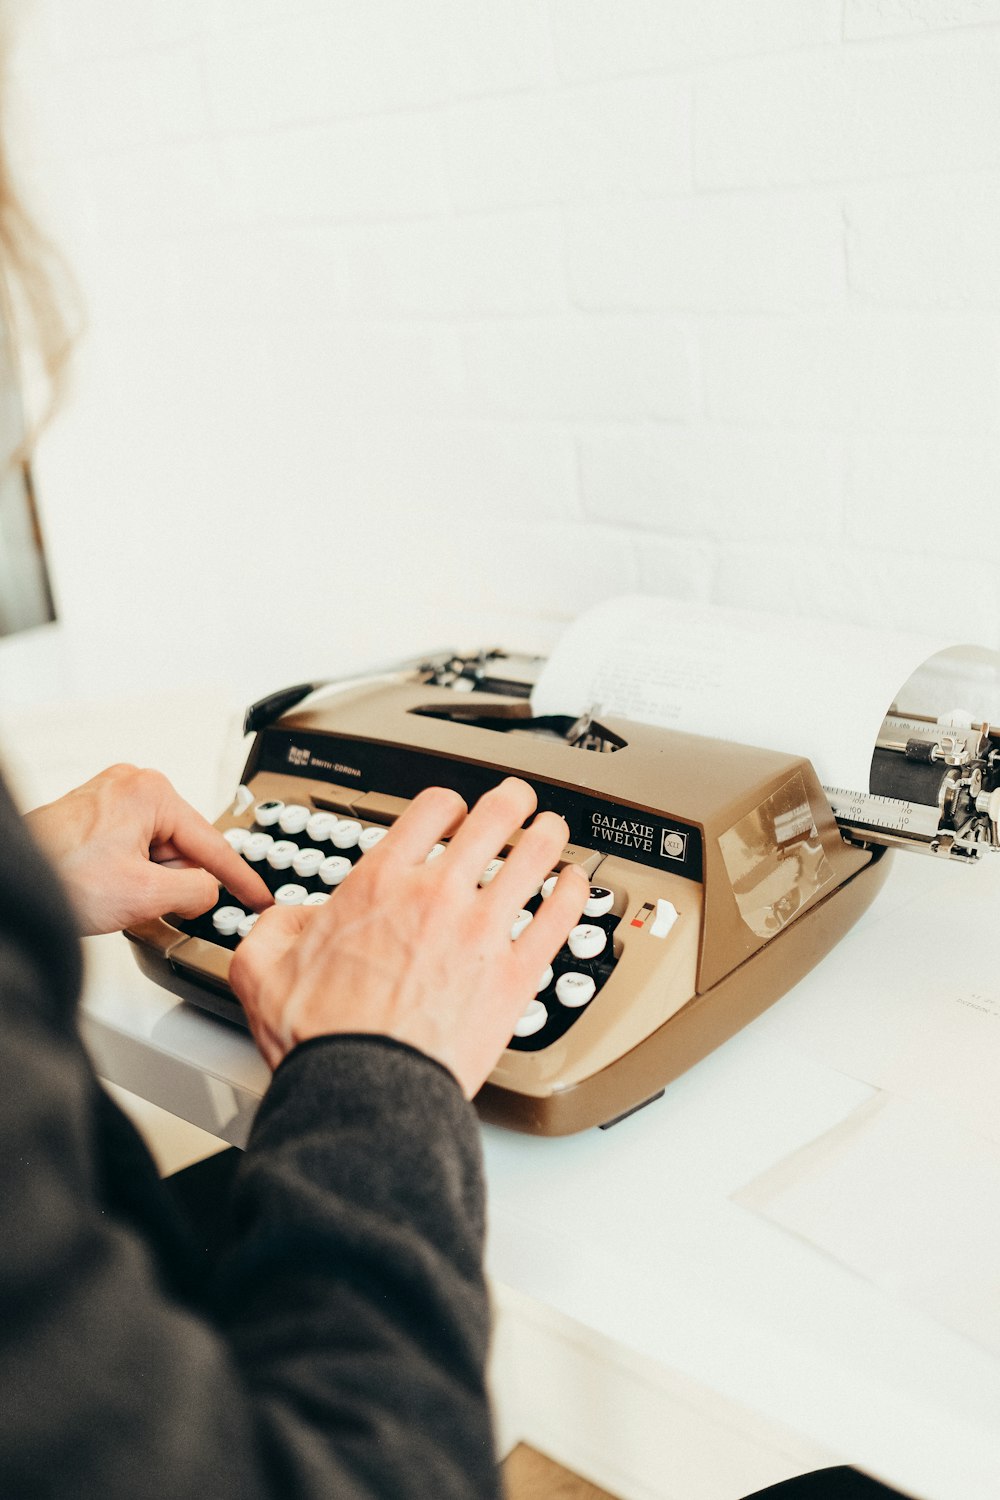 uma pessoa digitando em uma máquina de escrever antiquada